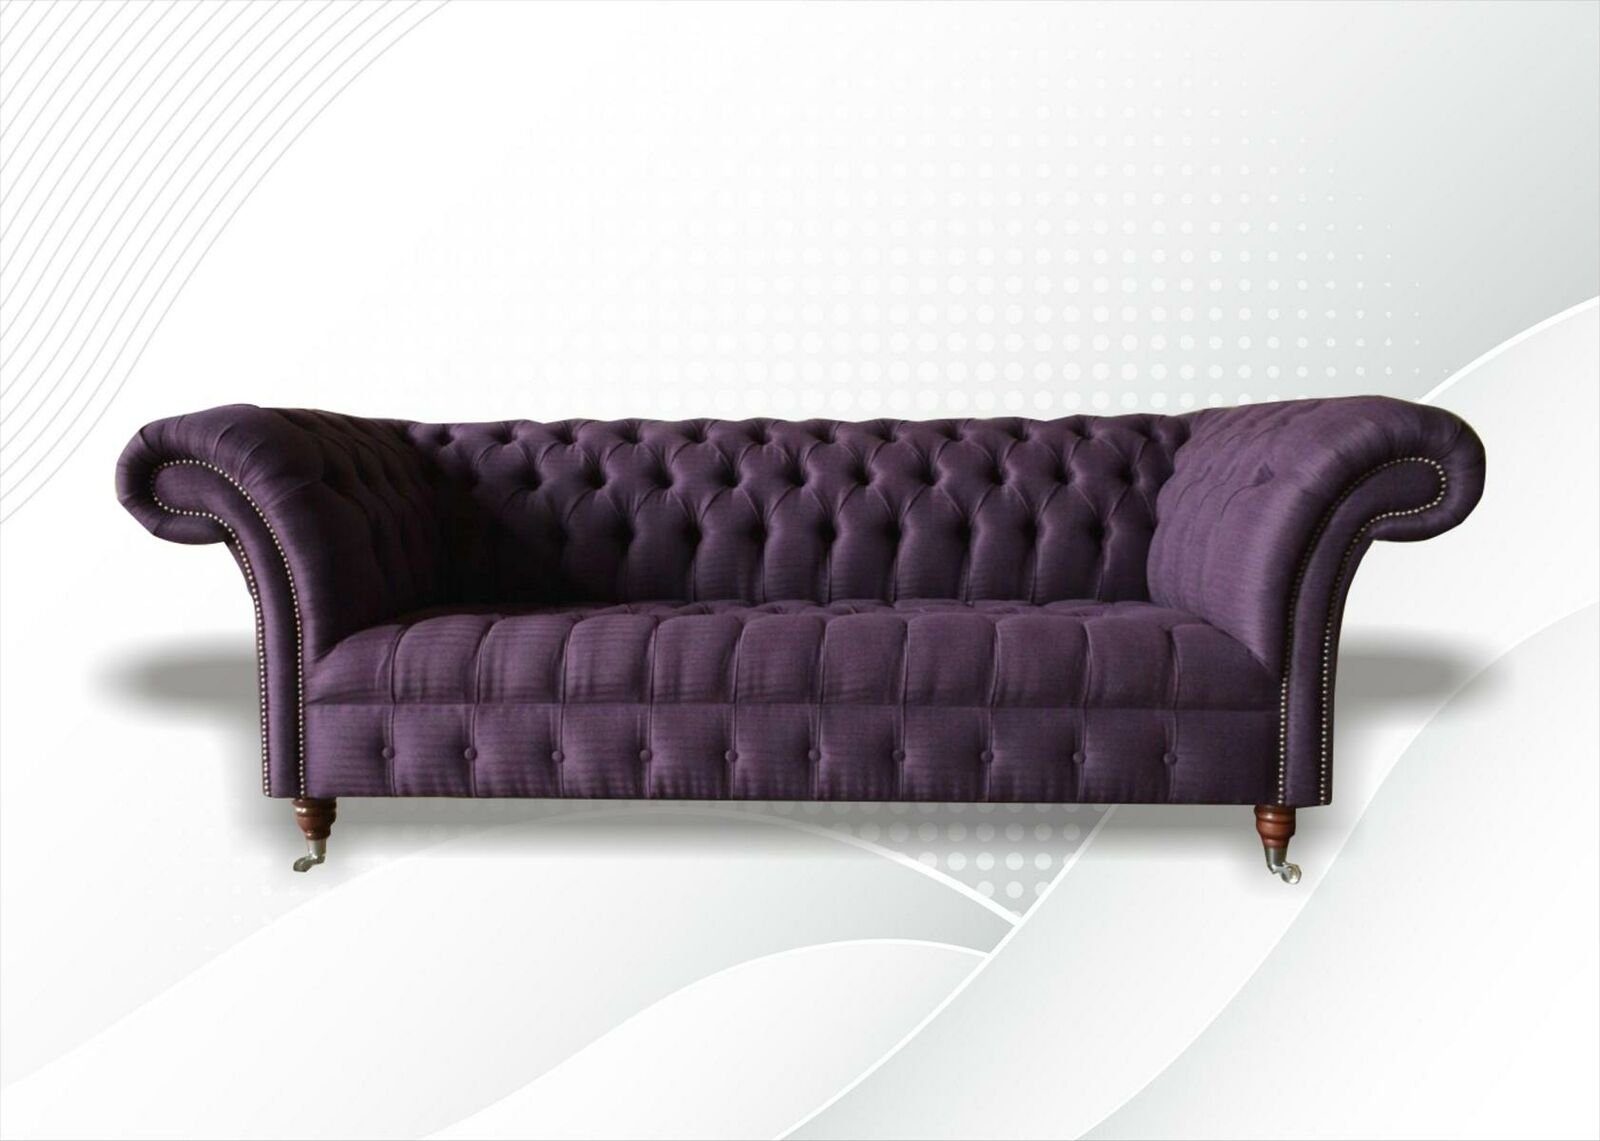 JVmoebel Chesterfield-Sofa Luxus Lila Chesterfield Dreisitzer Wohnzimmermöbel Design Neu, Made in Europe